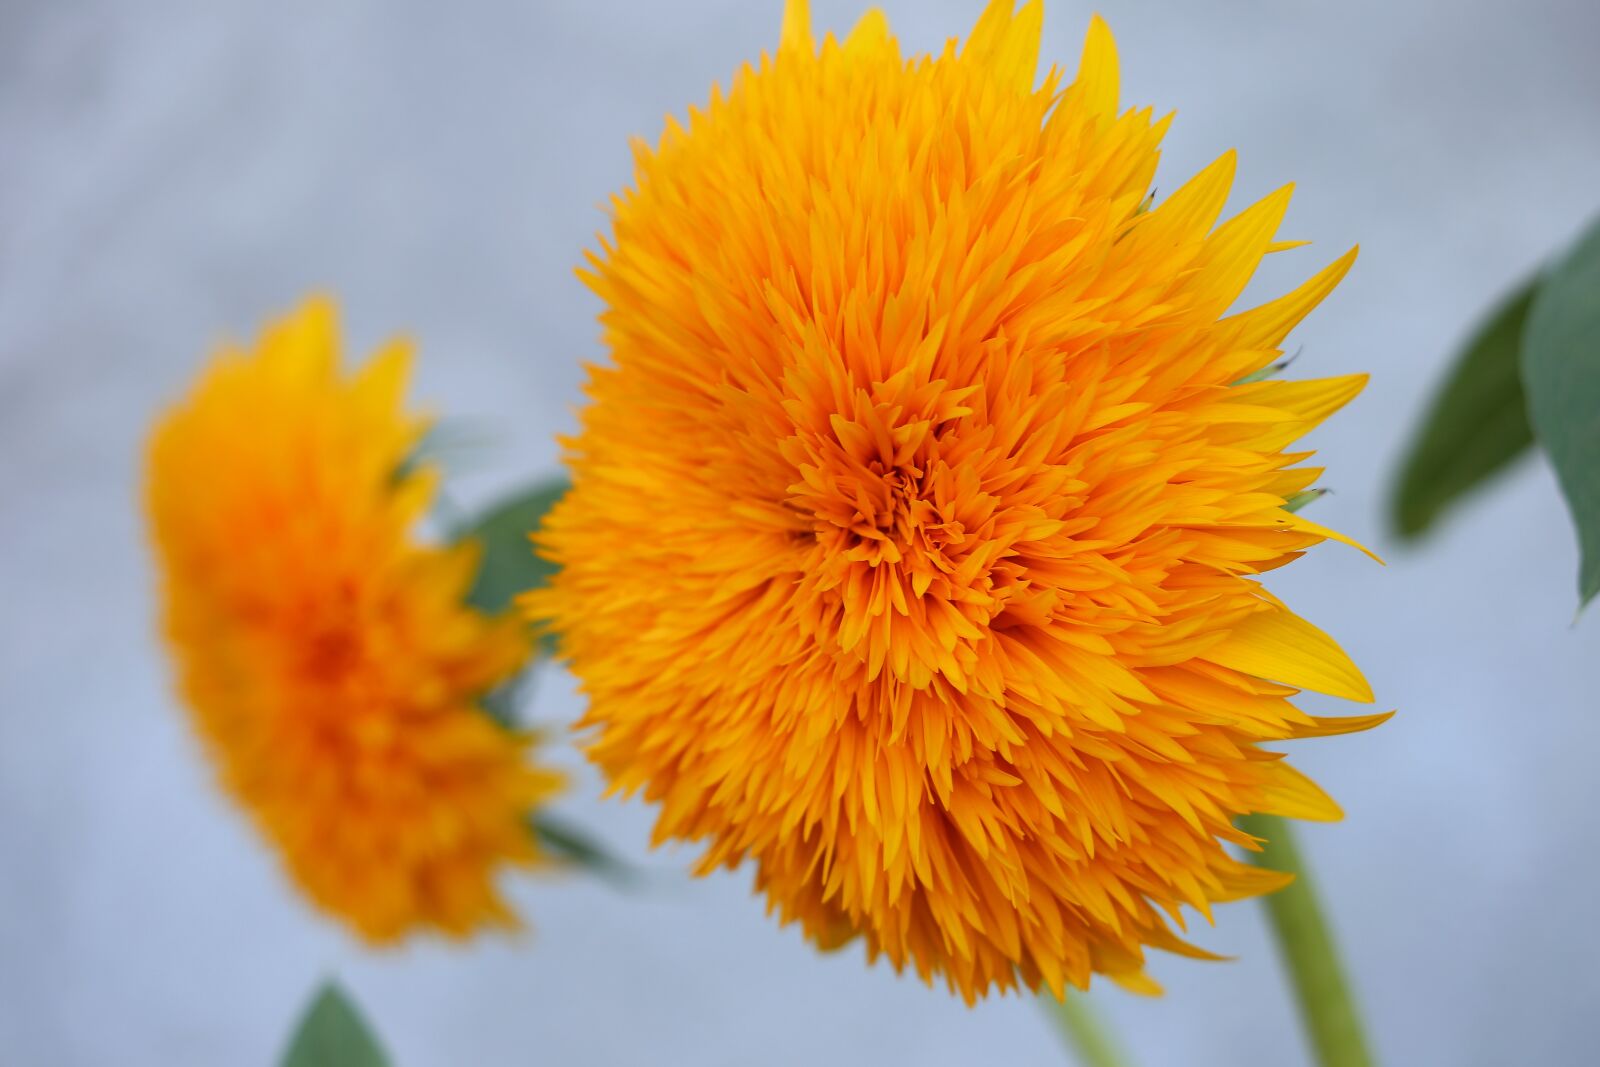 Canon EOS 6D sample photo. Decorative sunflower teddy bear photography